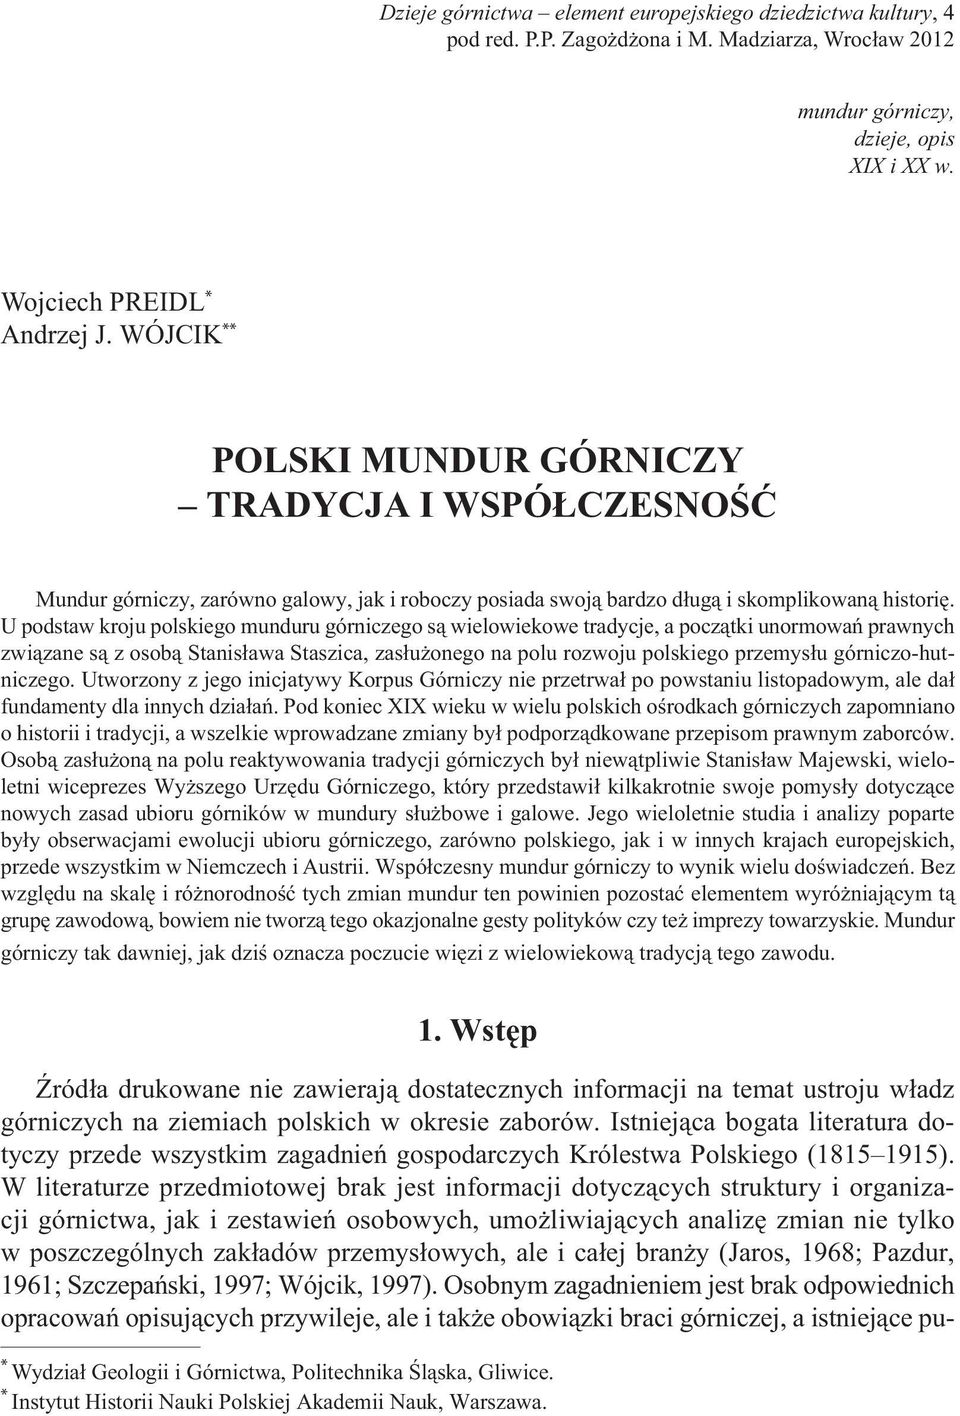 U podstaw kroju polskiego munduru górniczego są wielowiekowe tradycje, a początki unormowań prawnych związane są z osobą Stanisława Staszica, zasłużonego na polu rozwoju polskiego przemysłu